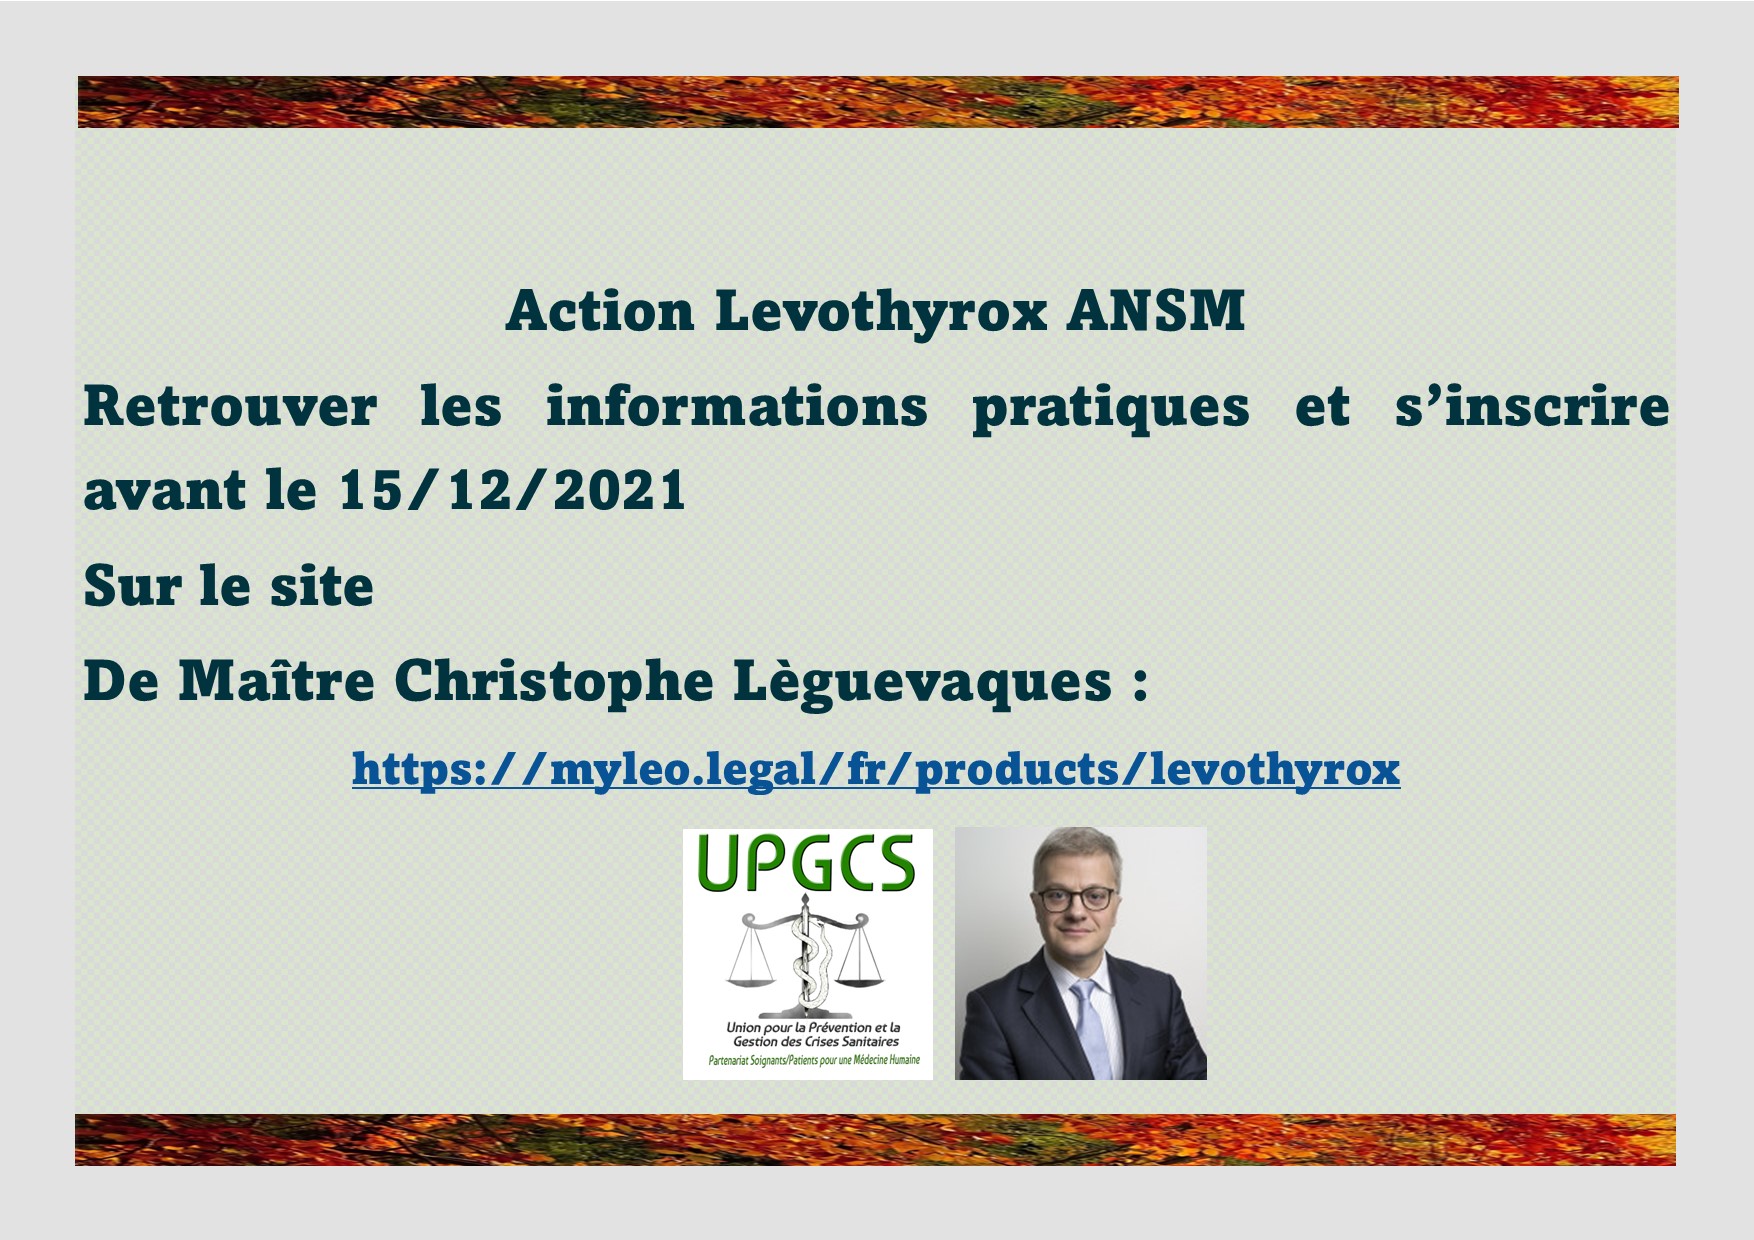 Affaire Levothyrox , une action contre l'ANSM , toutes les informations